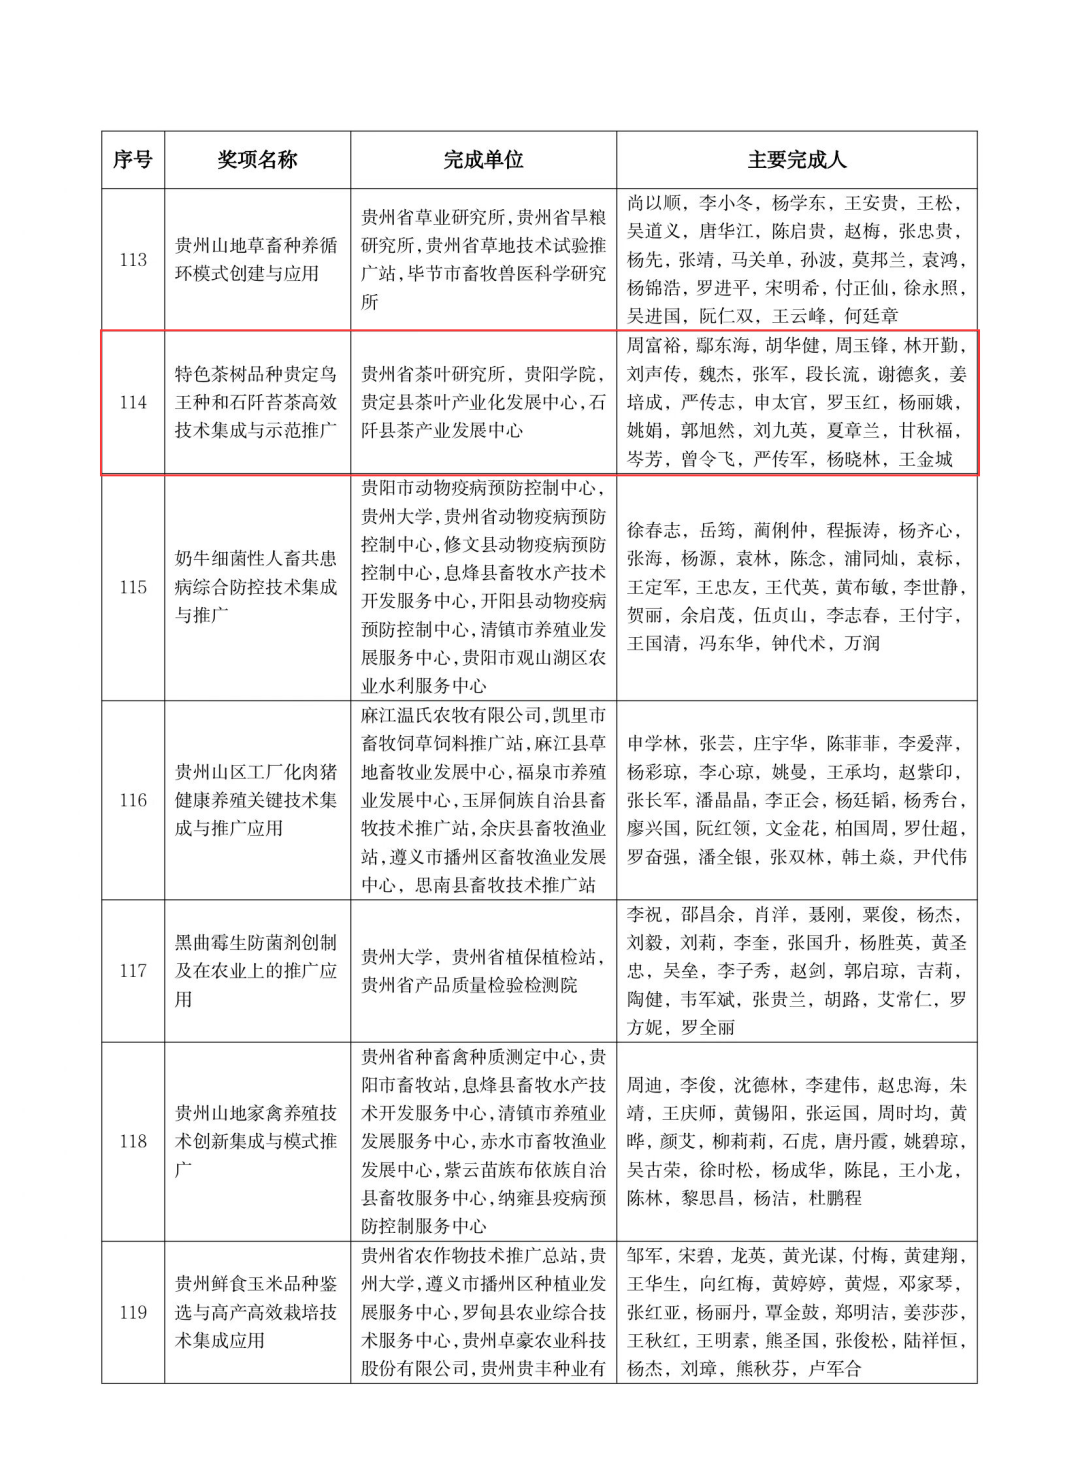 贵州省两项茶叶成果荣获2019-2021年度全国农牧渔业丰收奖